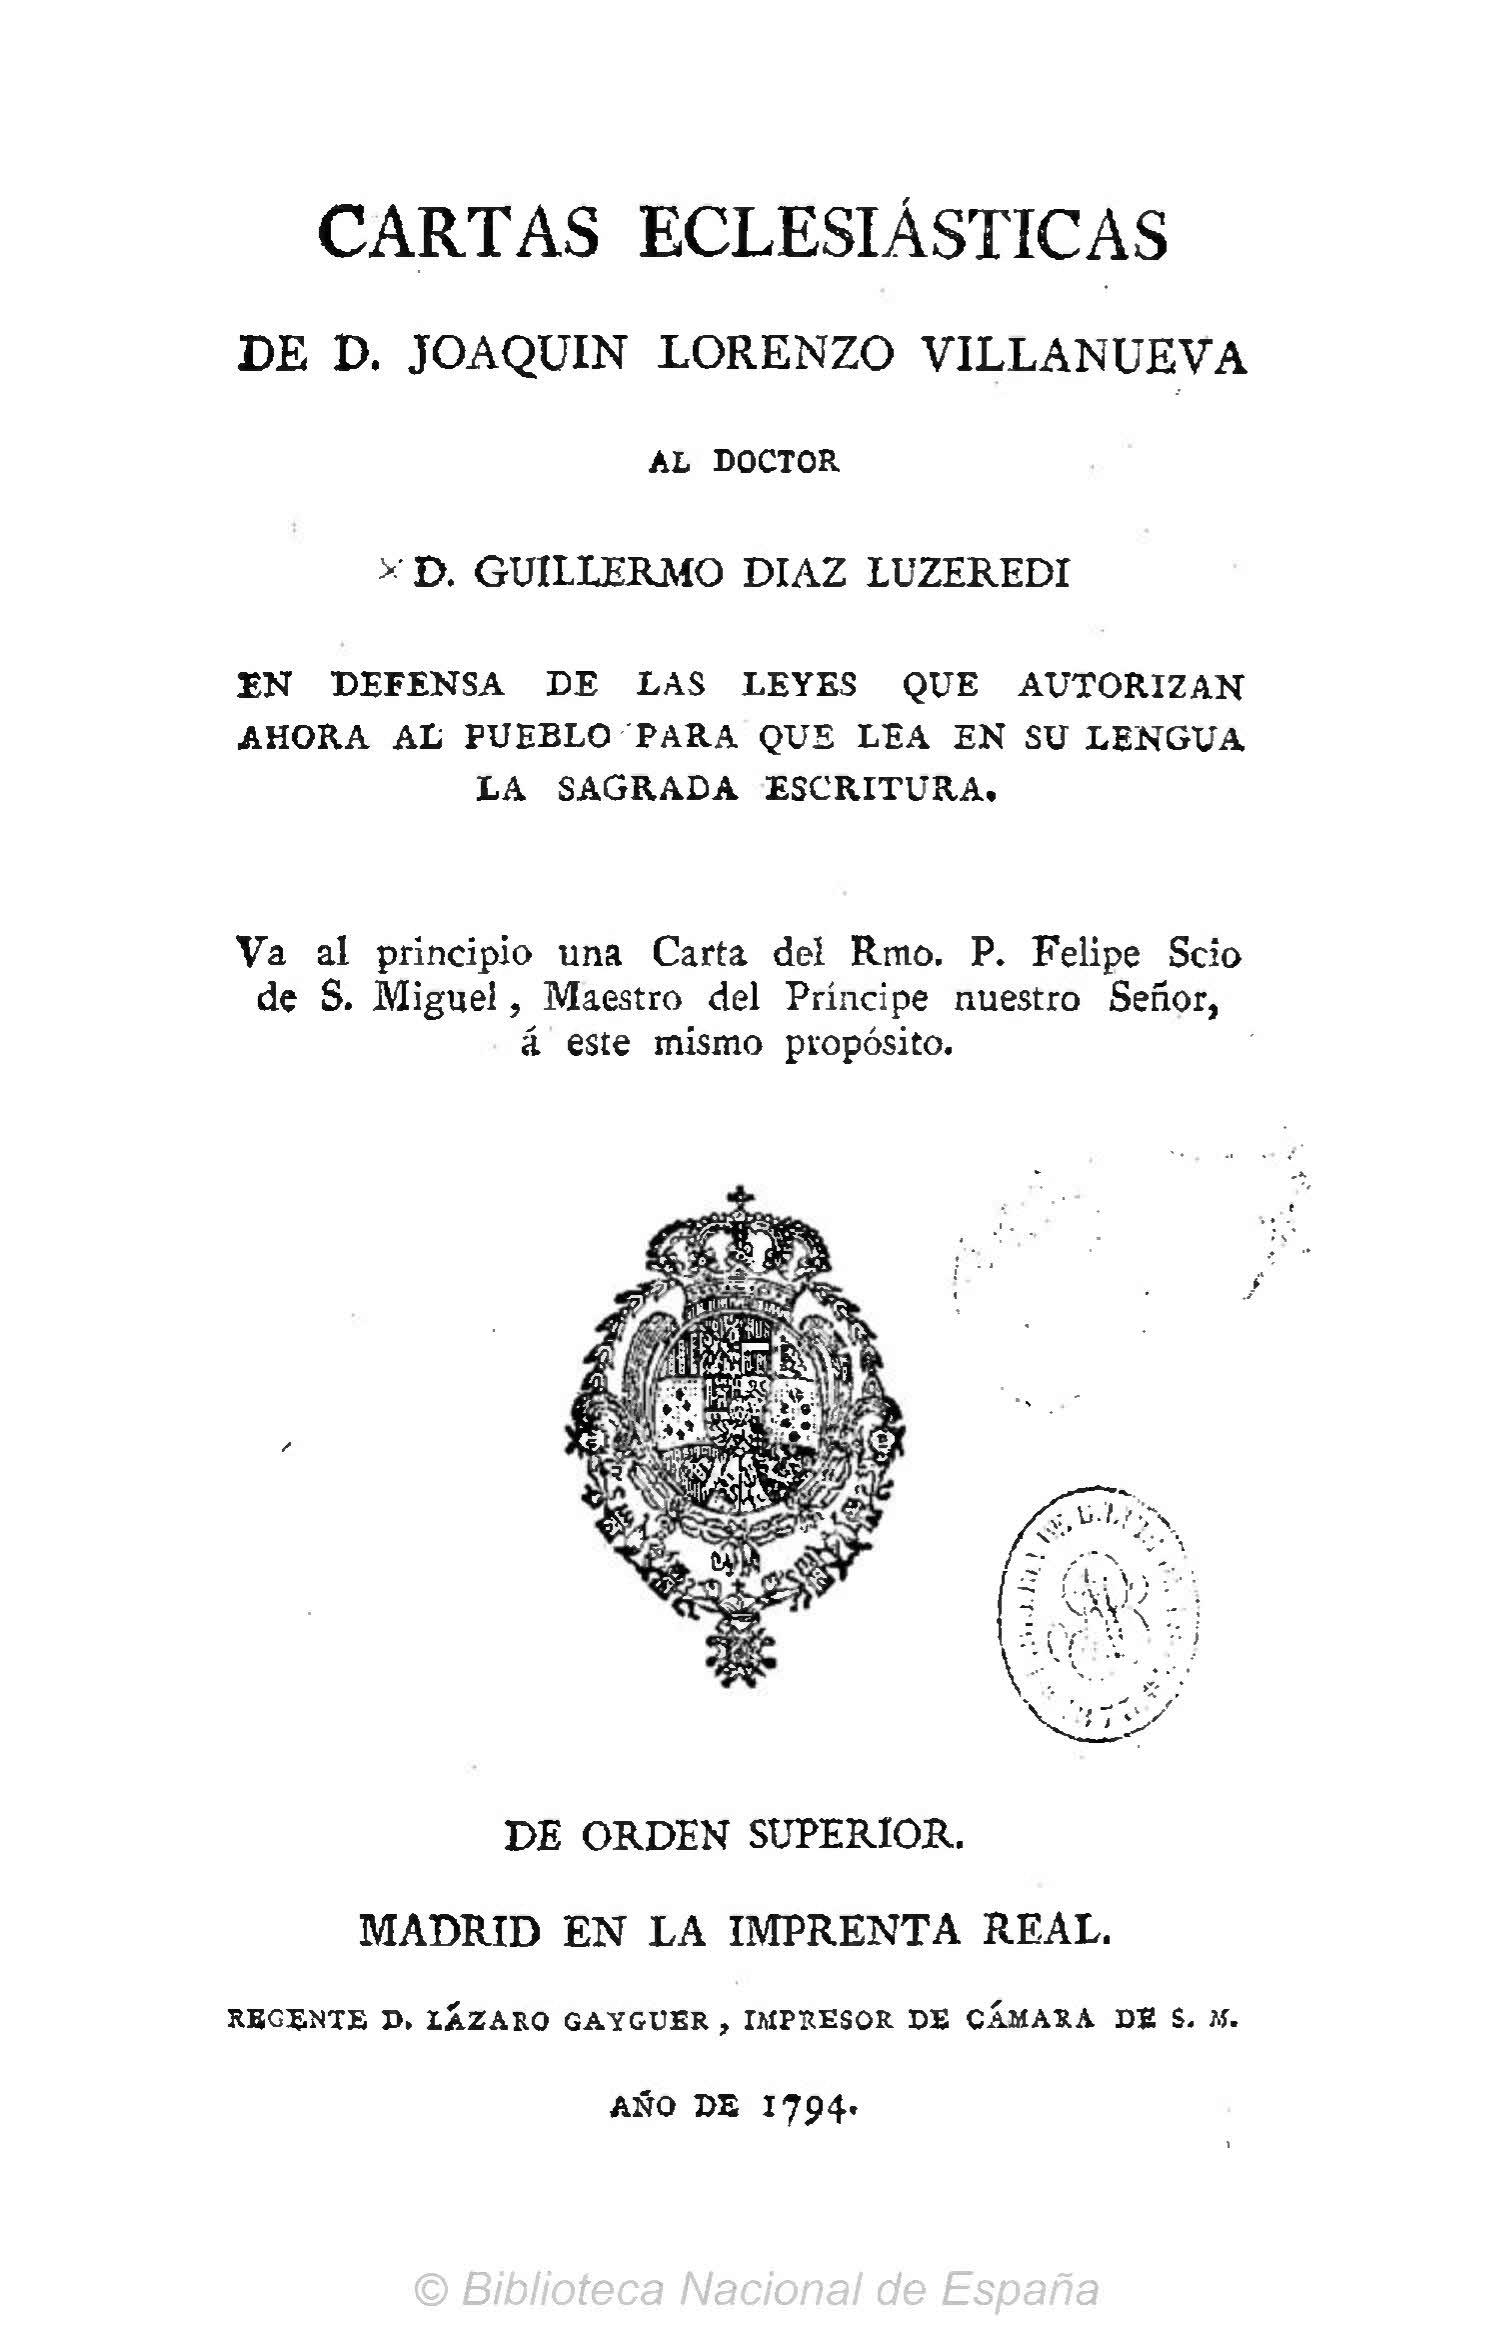 Cartas eclesiásticas de D. Joaquín Lorenzo Villanueva al doctor D. Guillermo Díaz Luzeredi